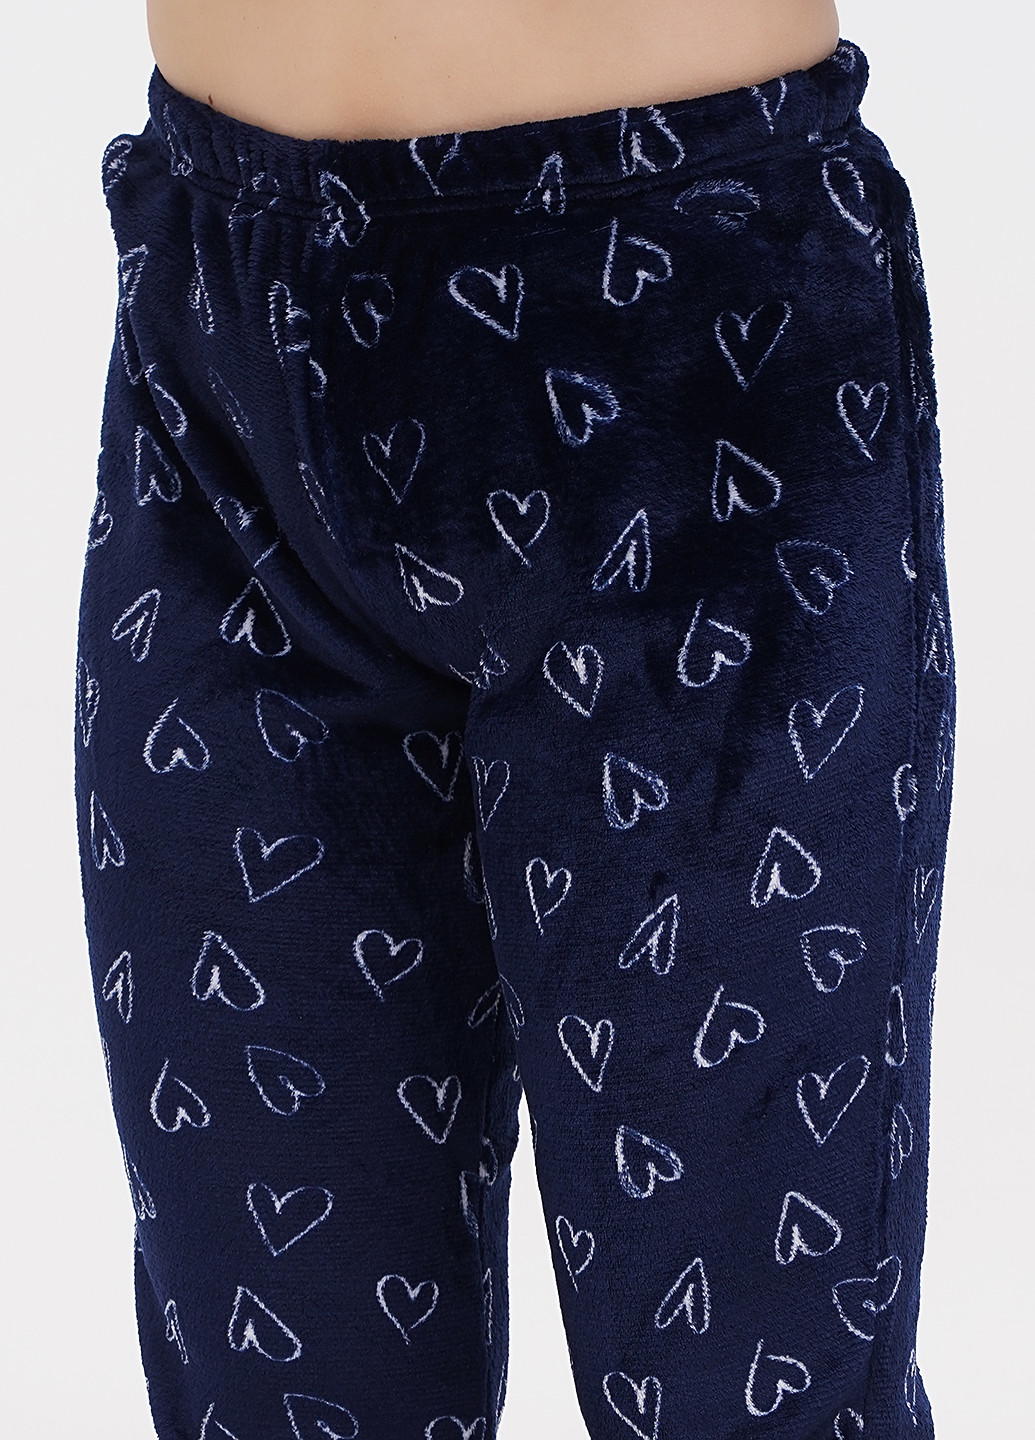 Темно-синяя зимняя пижама (свитшот, брюки) Fleri